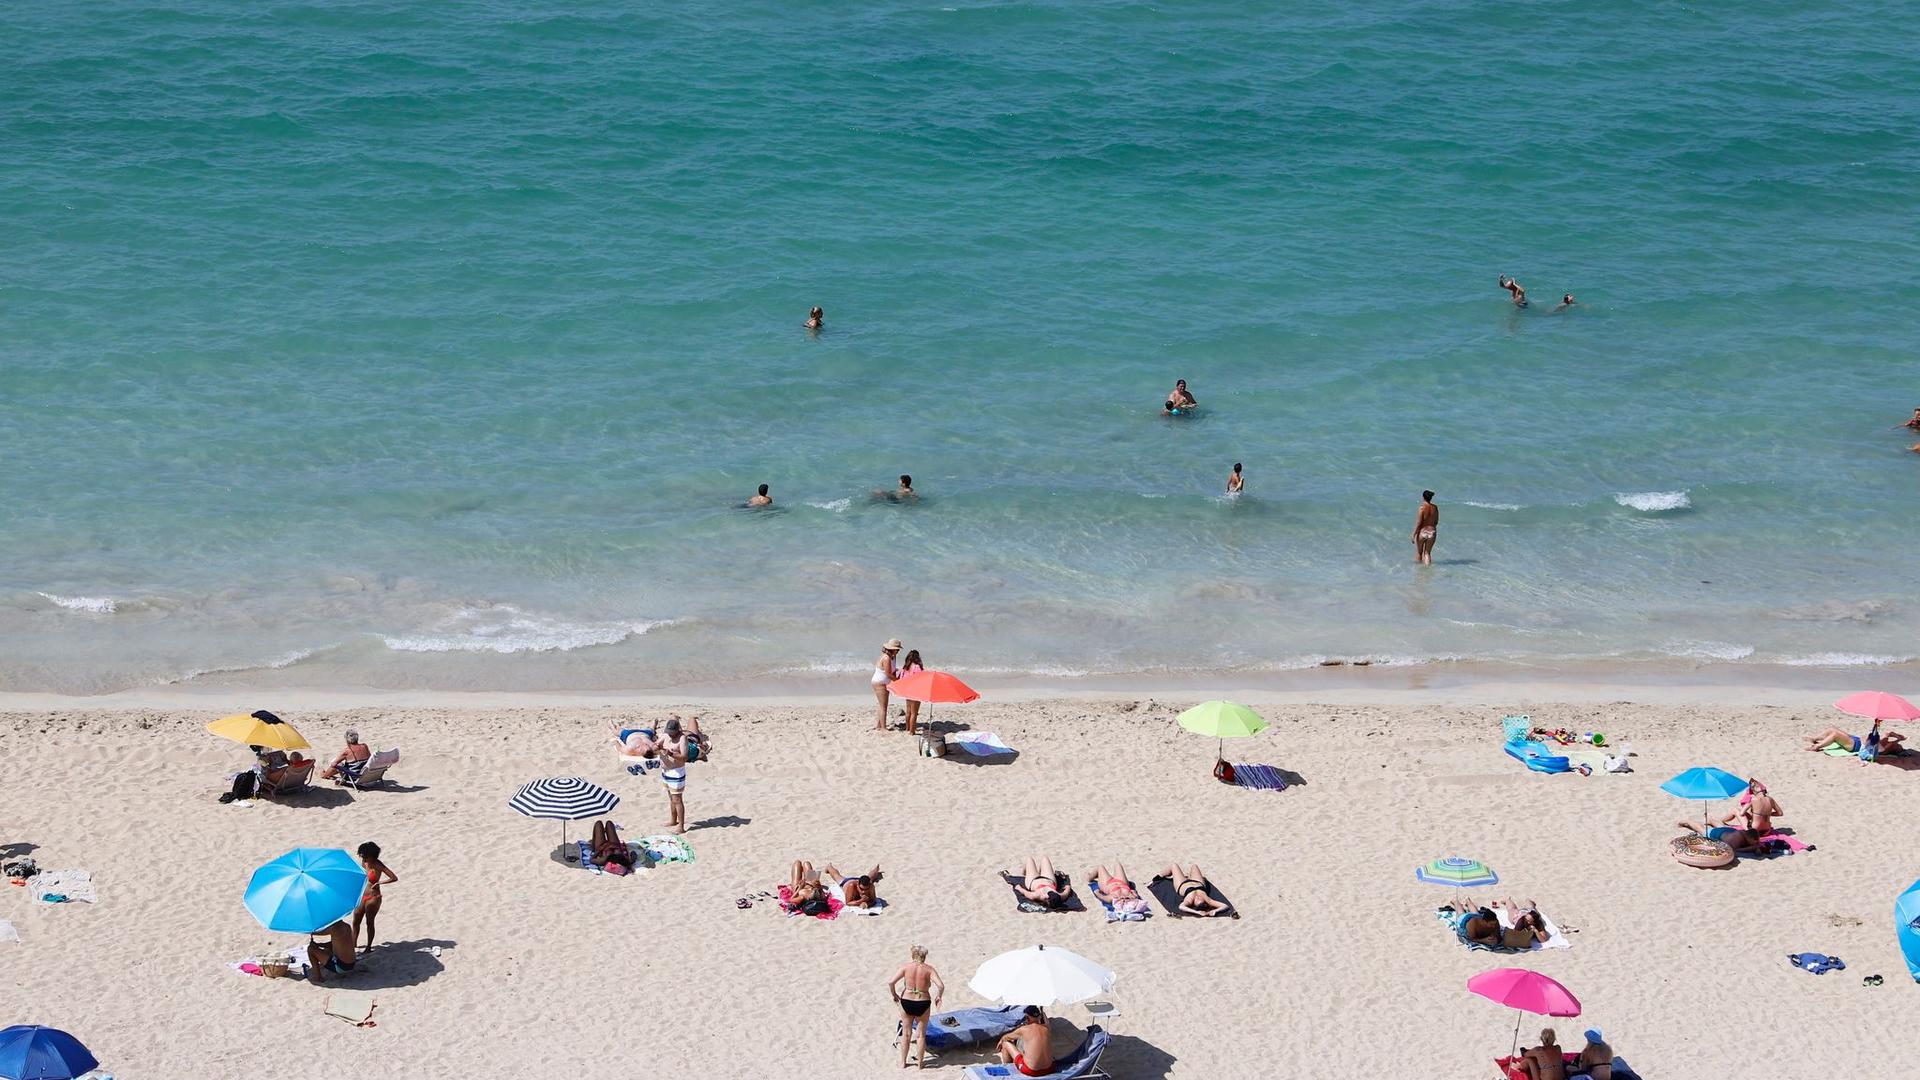 Badegäste am Strand von Arenal auf Mallorca. Deutsche Tourismuskonzerne kritisieren die Reisewarnung des Auswärtigen Amtes für die spanische Insel.